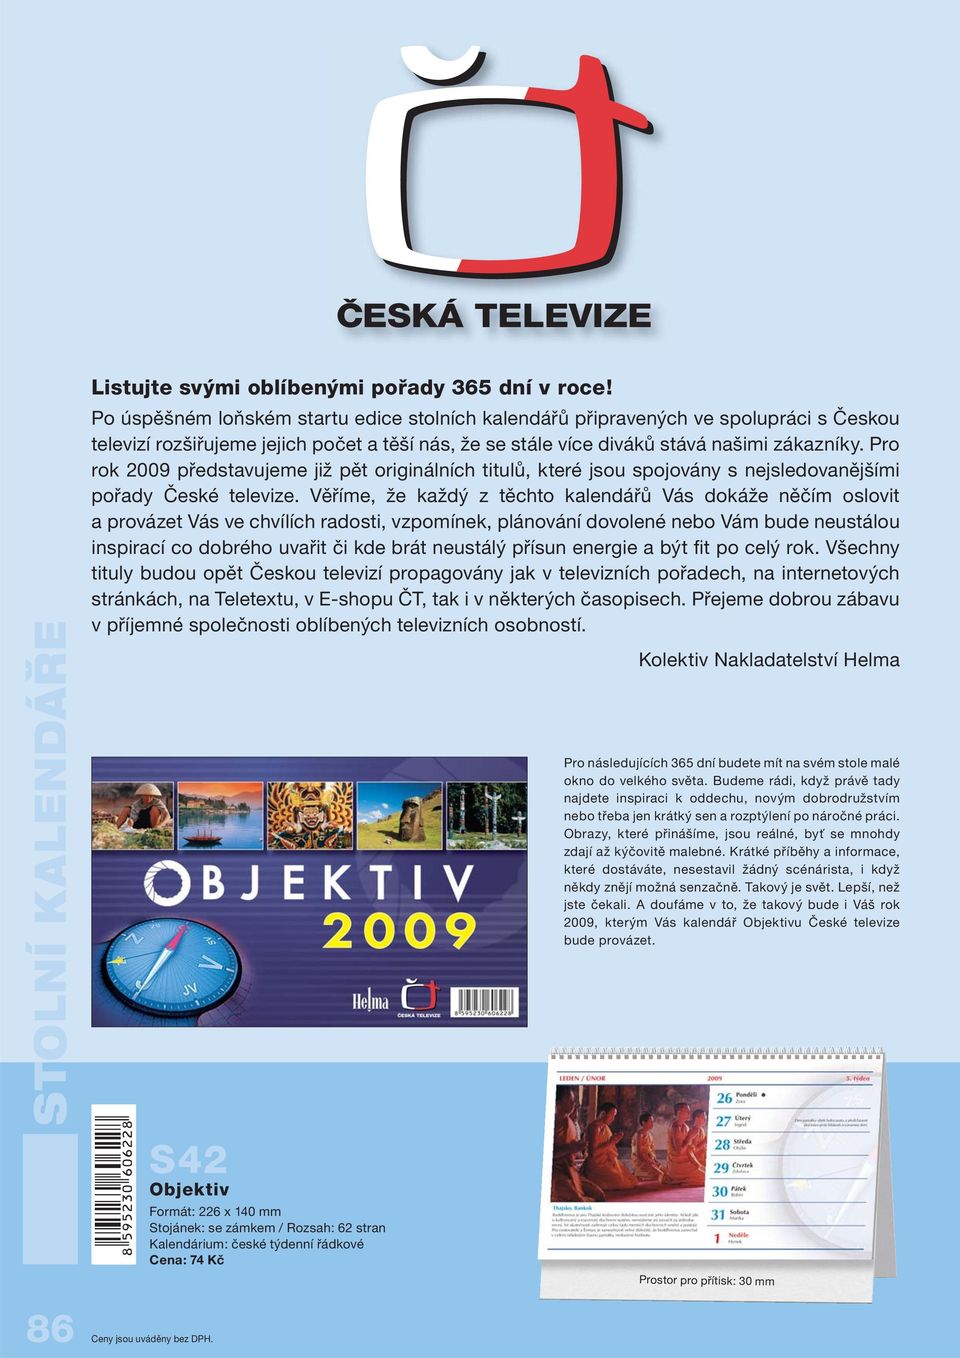 Pro rok 2009 představujeme již pět originálních titulů, které jsou spojovány s nejsledovanějšími pořady České televize.